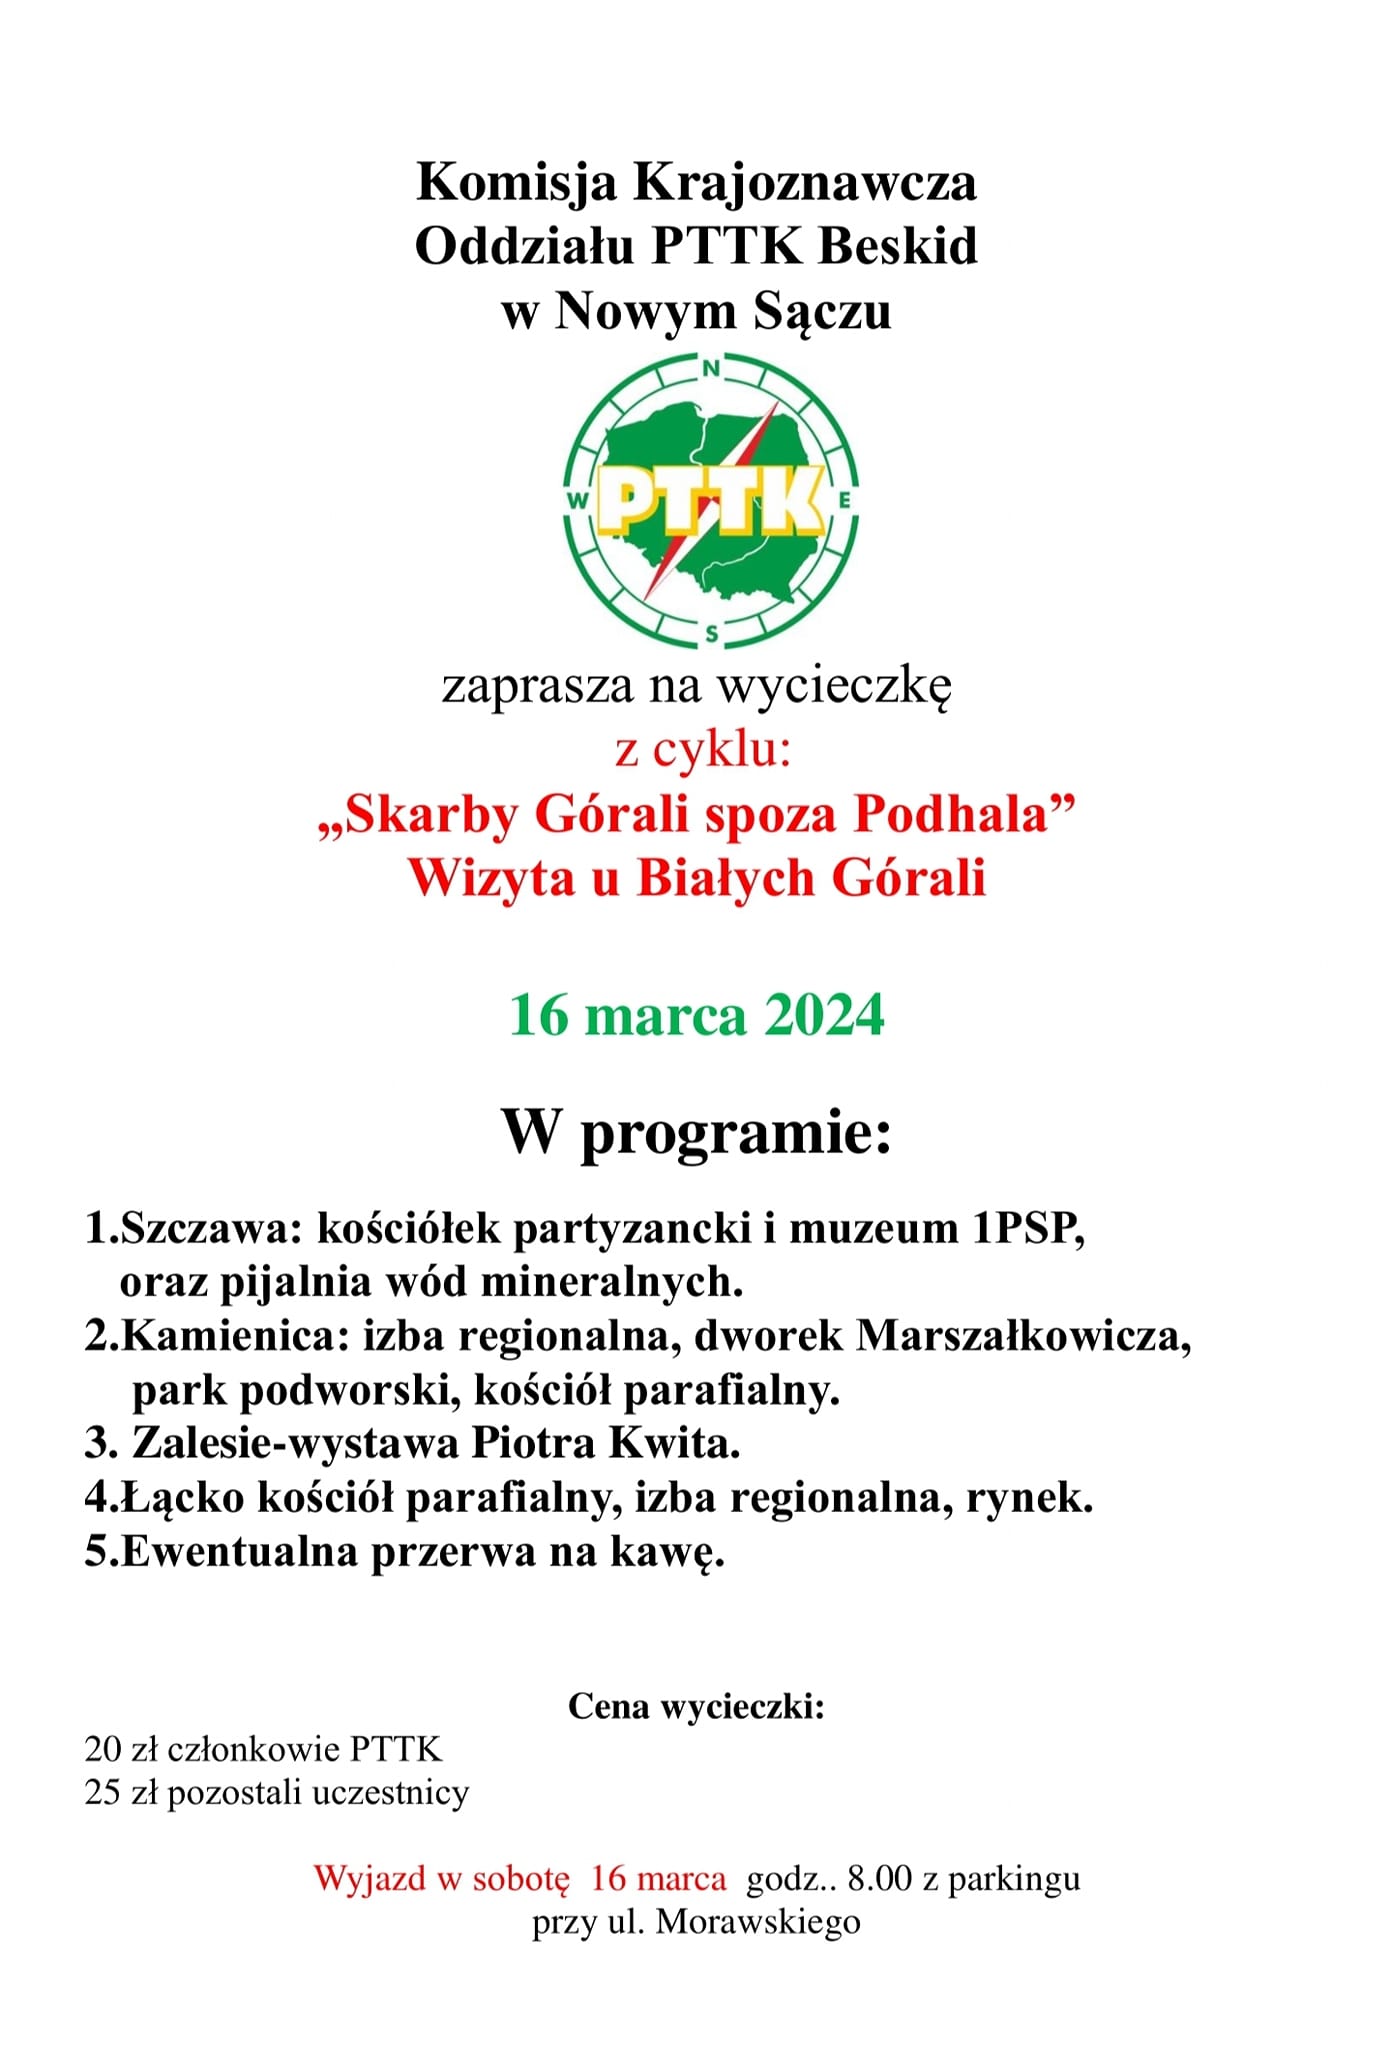 Skarby Górali spoza Podhala, wizyta u Białych Górali, 16 marca 2024 r.